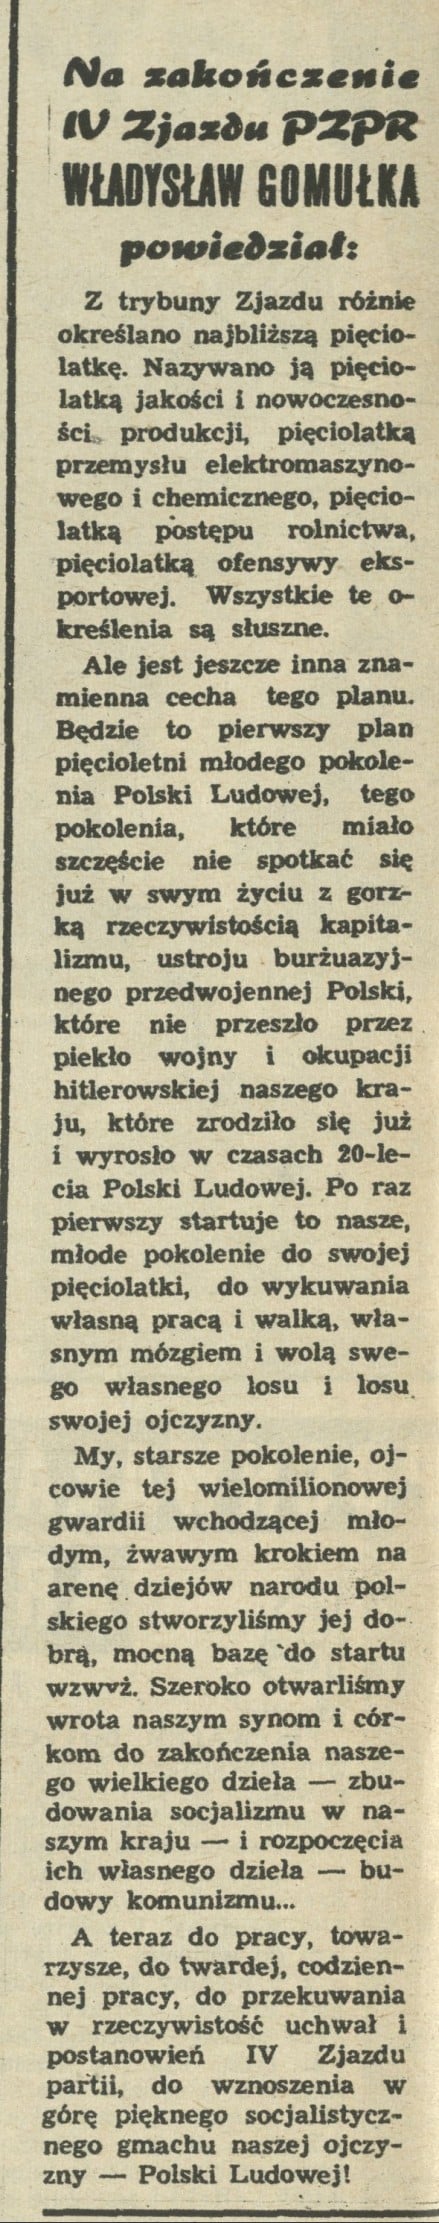 Na zakończenie IV Zjazdu PZPR Władysław Gomułka powiedział